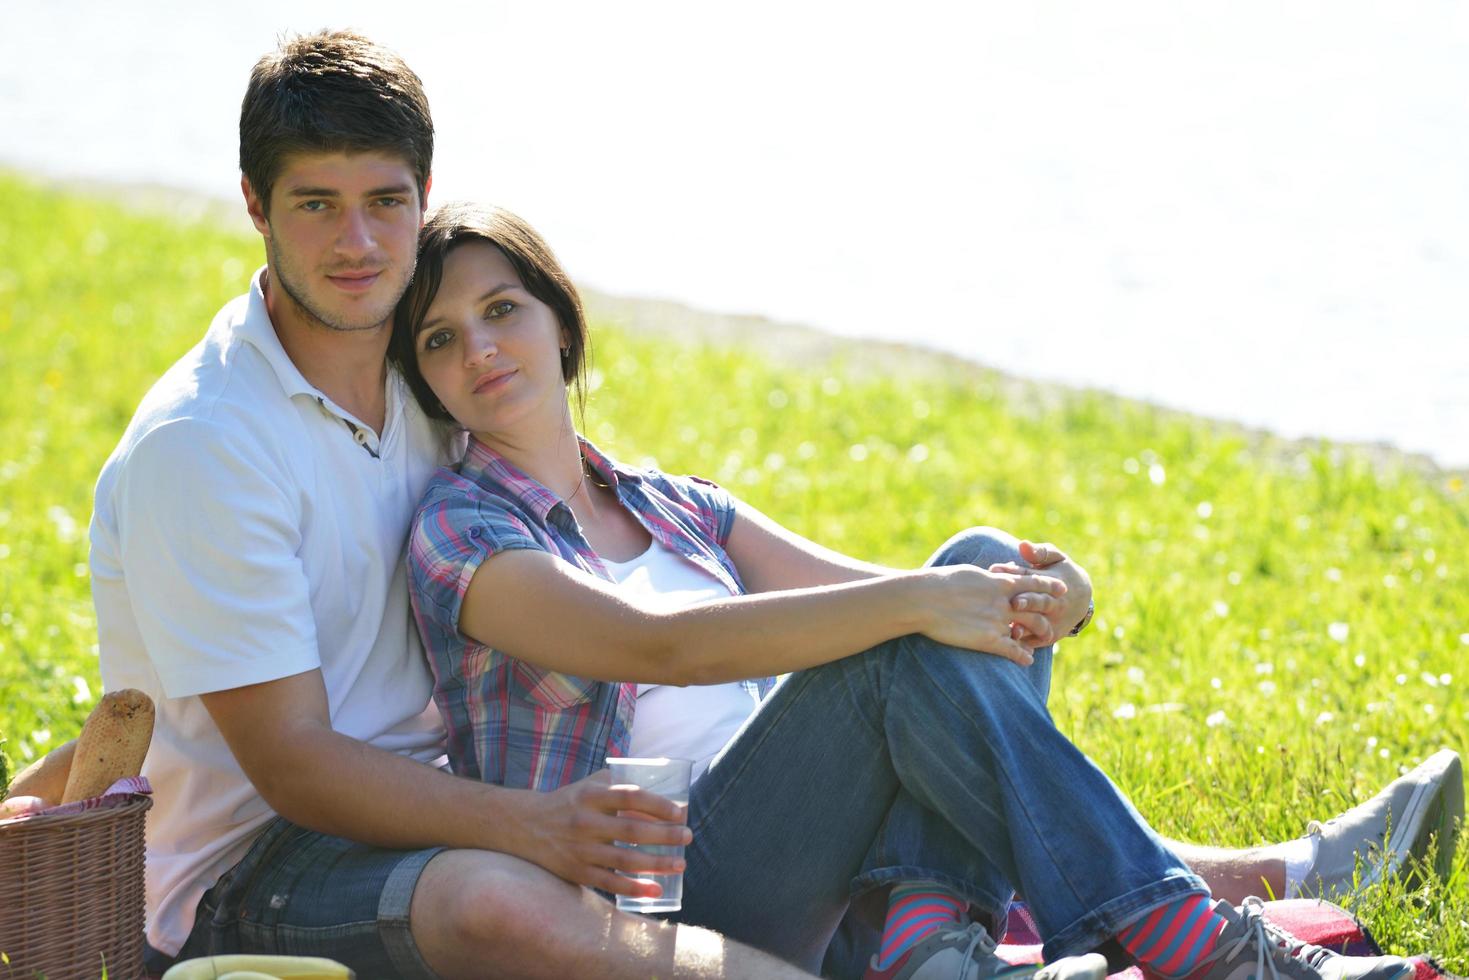 casal jovem feliz fazendo um piquenique ao ar livre foto